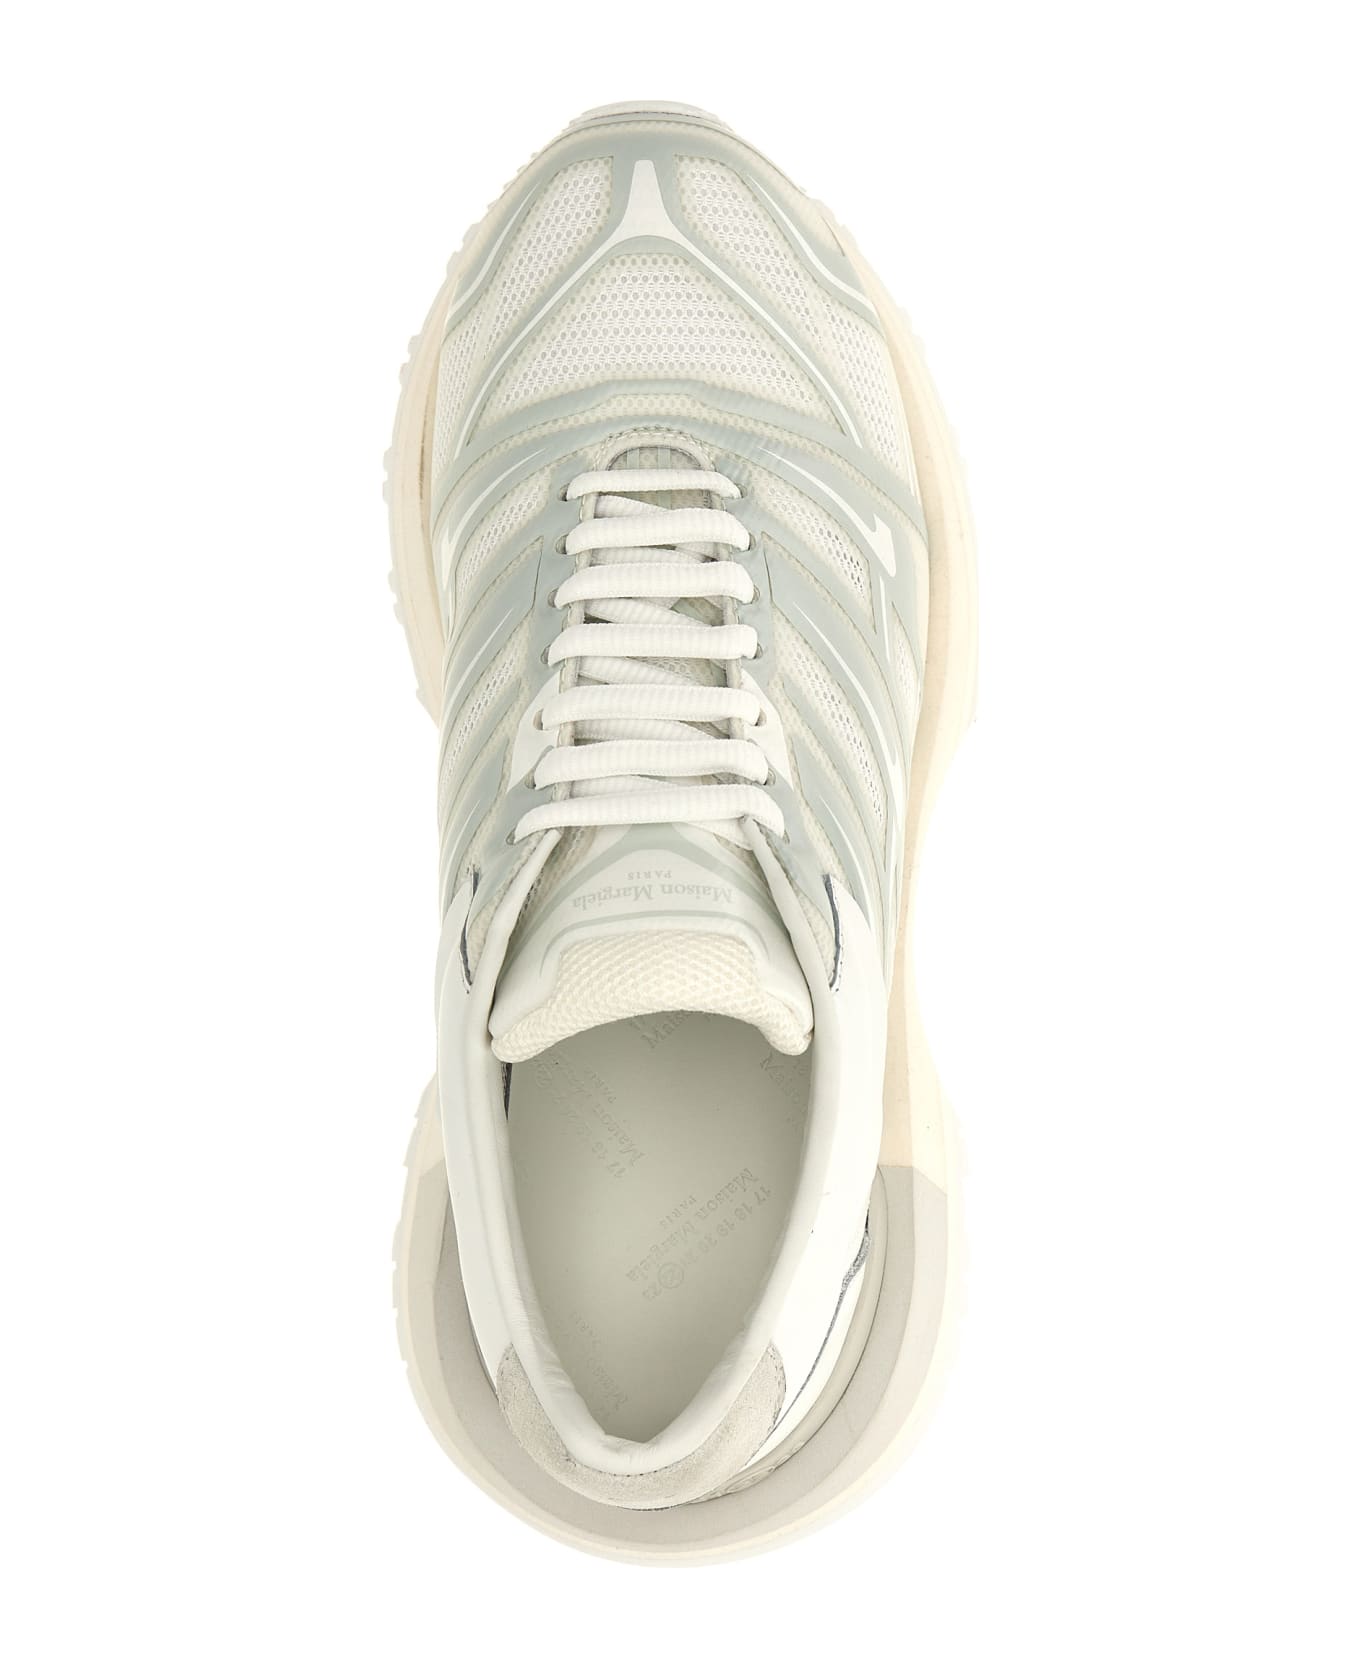 Maison Margiela '50/50' Sneakers - White スニーカー